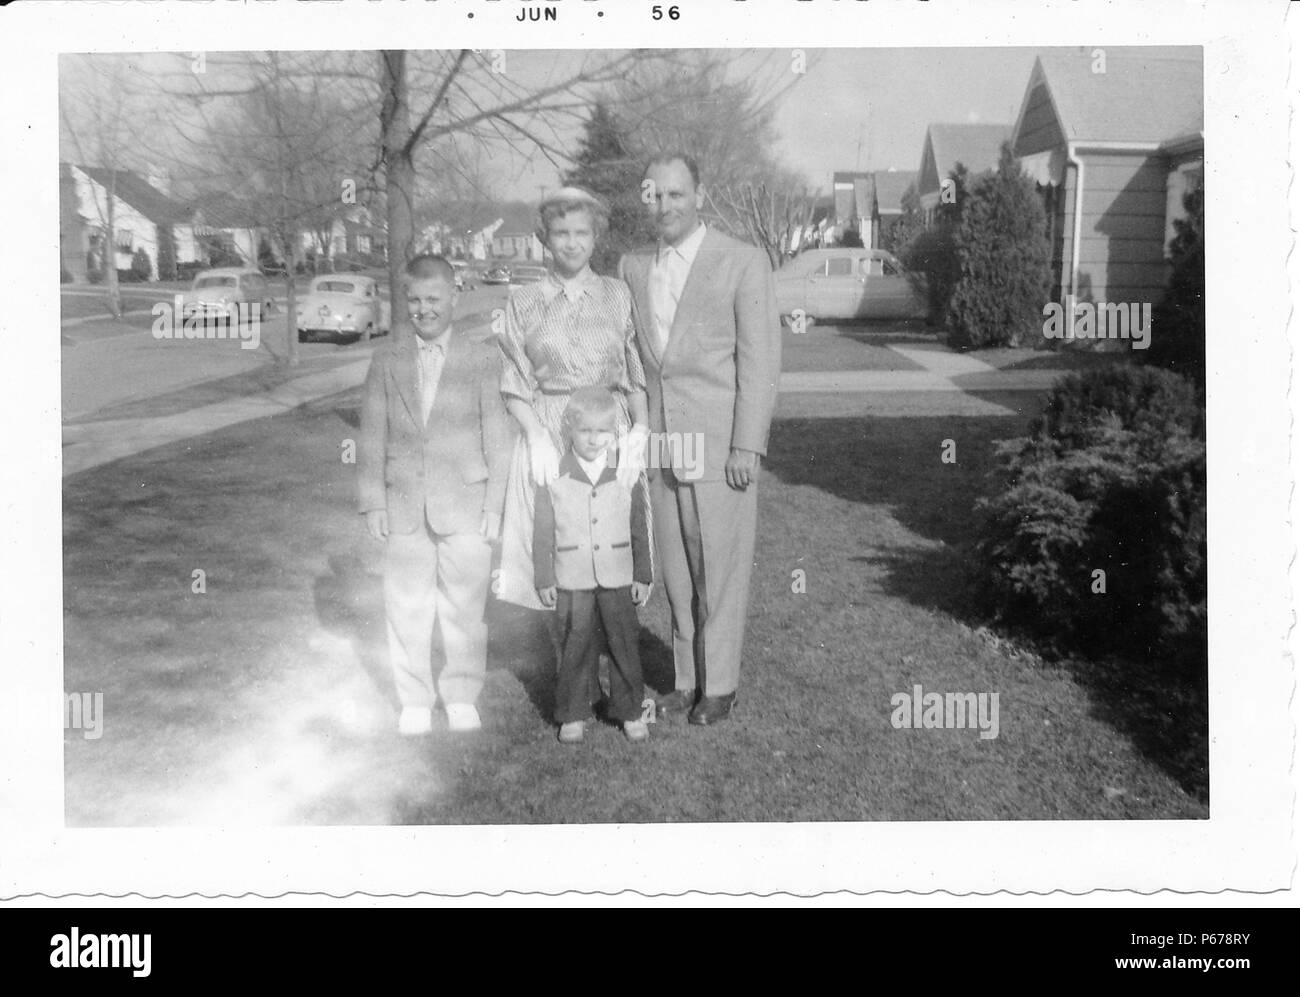 Schwarz-weiß Foto, zeigt eine Familie, in der vollen Länge, zusammen Posieren im Freien, der Mann mittleren Alters, mit einem zurücktretenhaarstrich, trägt einen hellen Anzug und steht mit einem kurzhaarigen Frau, trug einen Rock, Bluse und Handschuhe, und zwei Jungen, beide trugen Anzüge, die Kleinere trägt eine zweifarbige Jacke, mit Bäumen, Oldtimer und s-Häuser im Hintergrund sichtbar, wahrscheinlich in Ohio, Juni, 1956 fotografiert. () Stockfoto